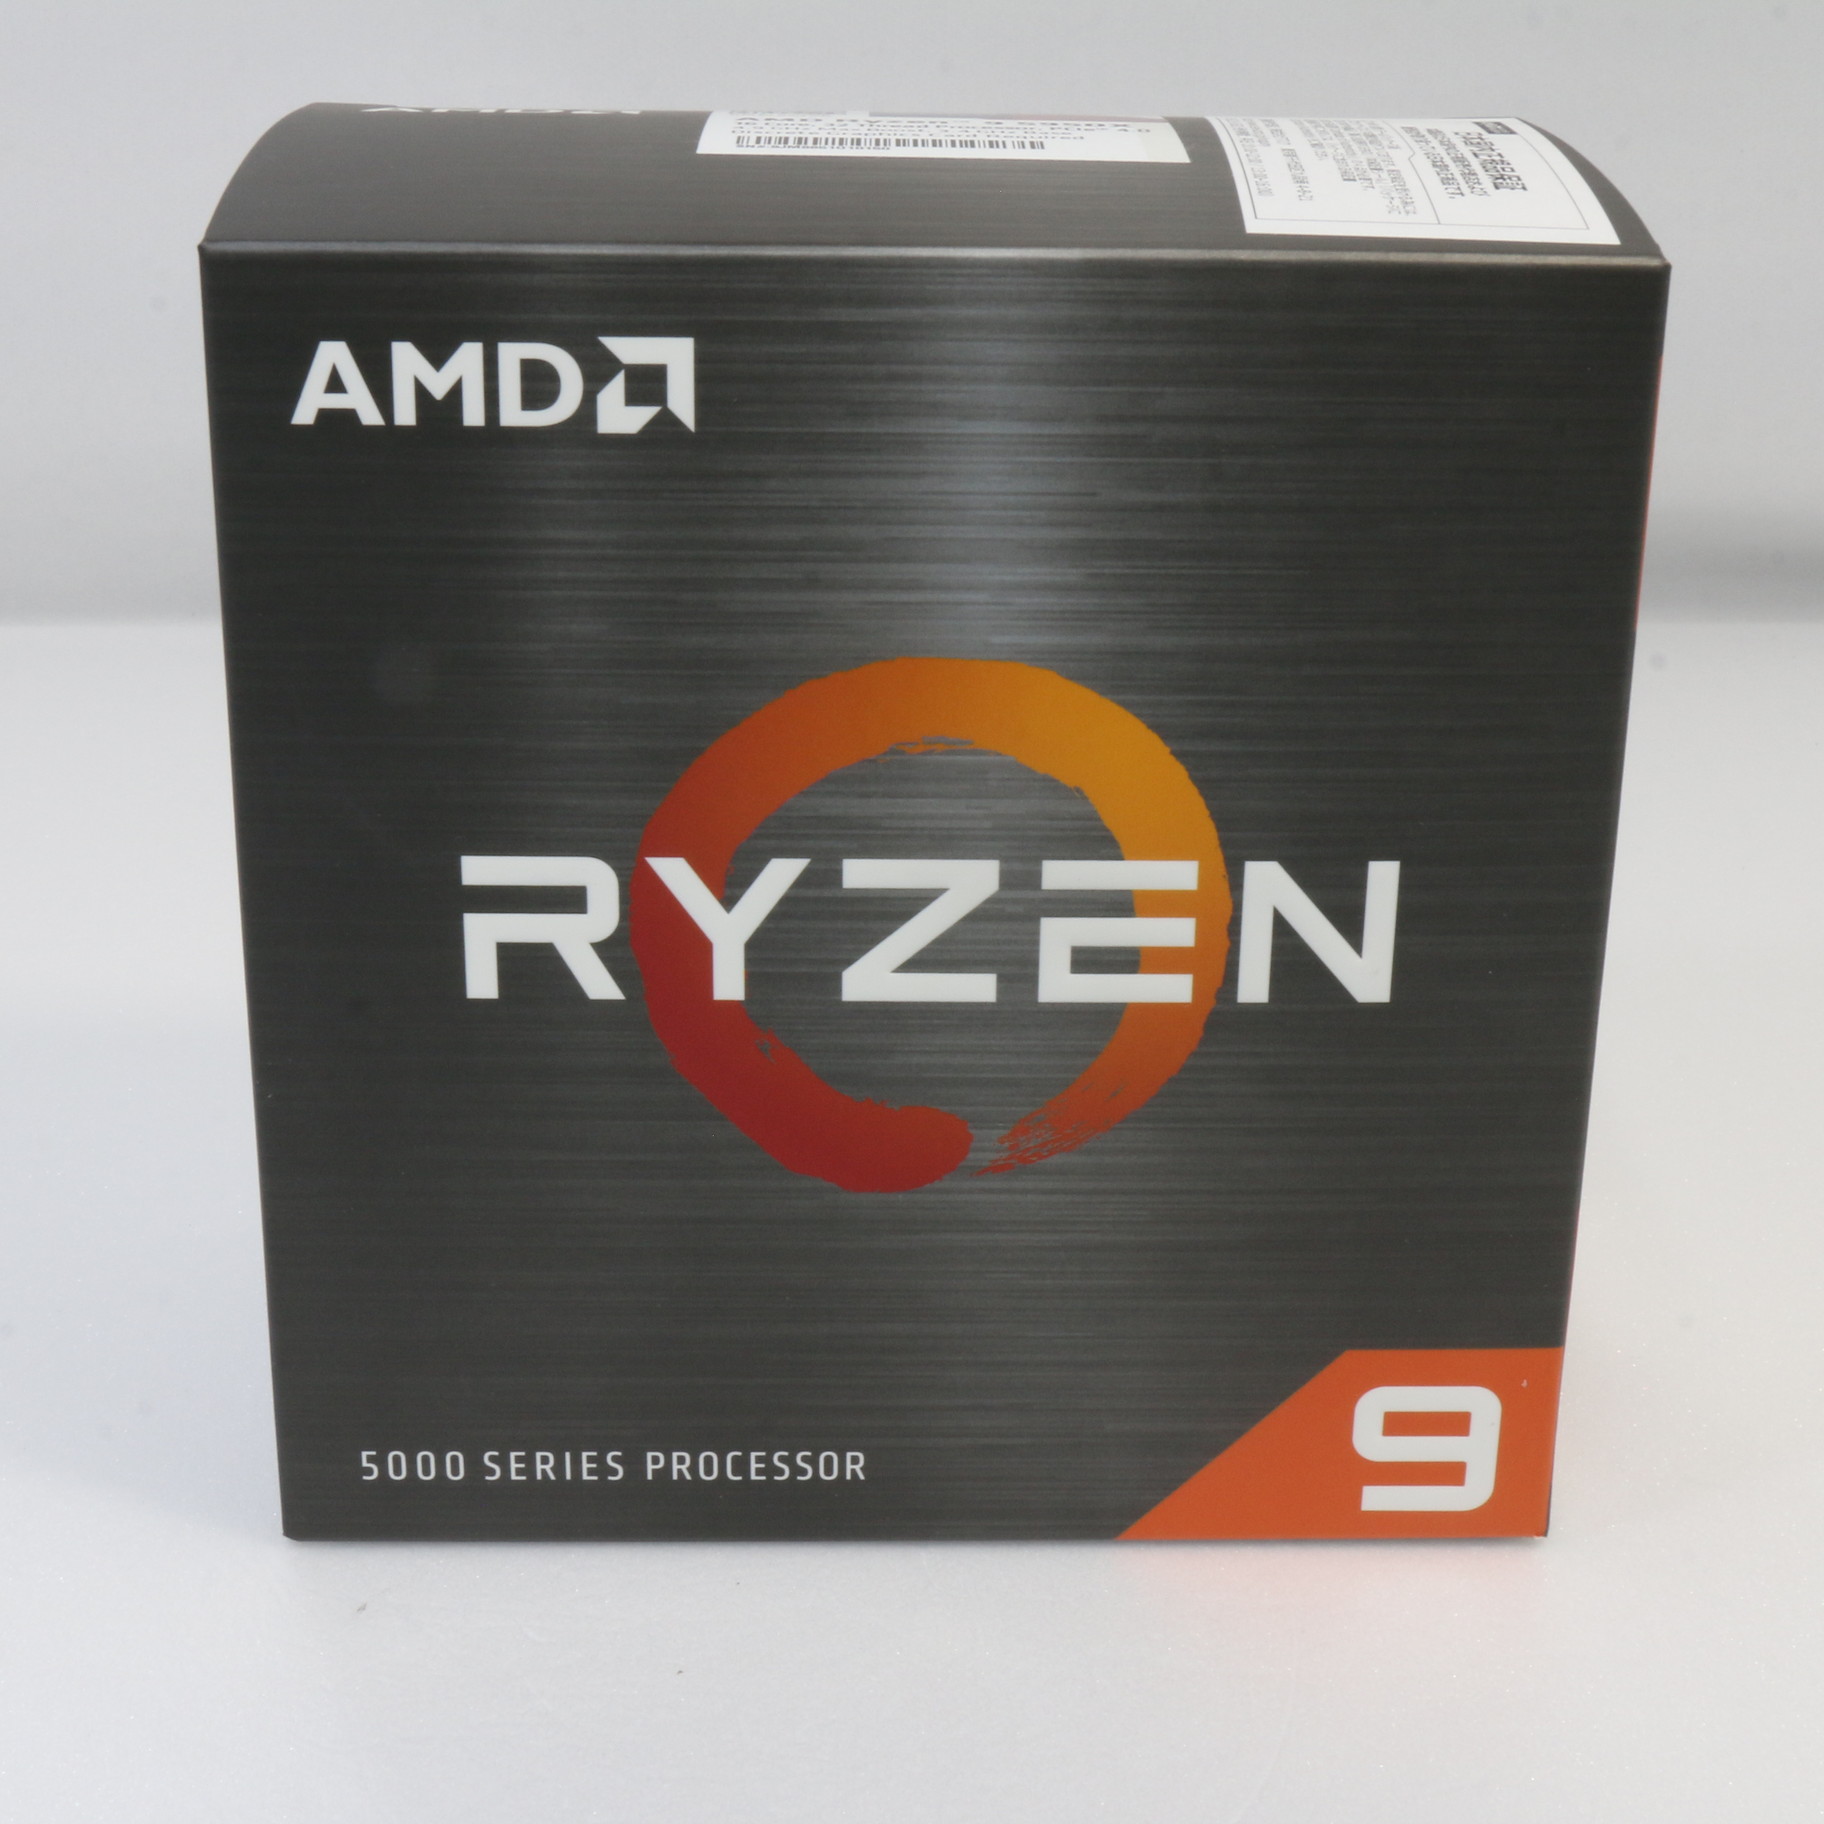 AMD Ryzen 9 5950X 新品未開封品 国内正規品